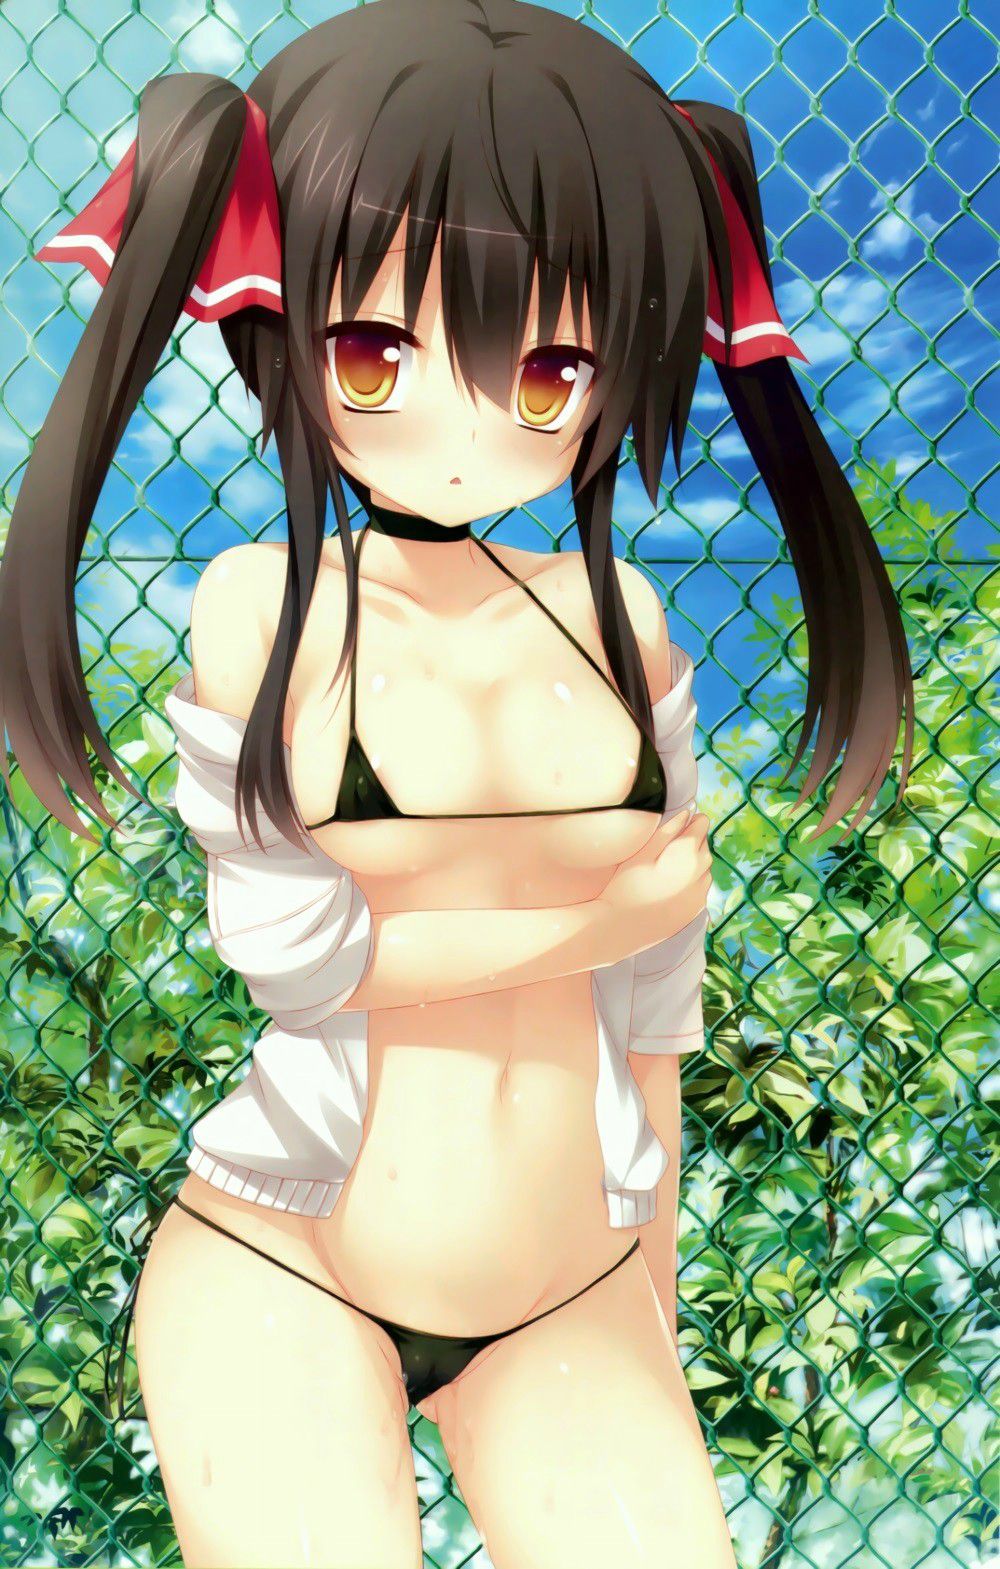 Porori Chikuni! Secondary erotic picture of a girl in a micro bikini wwww part3 31